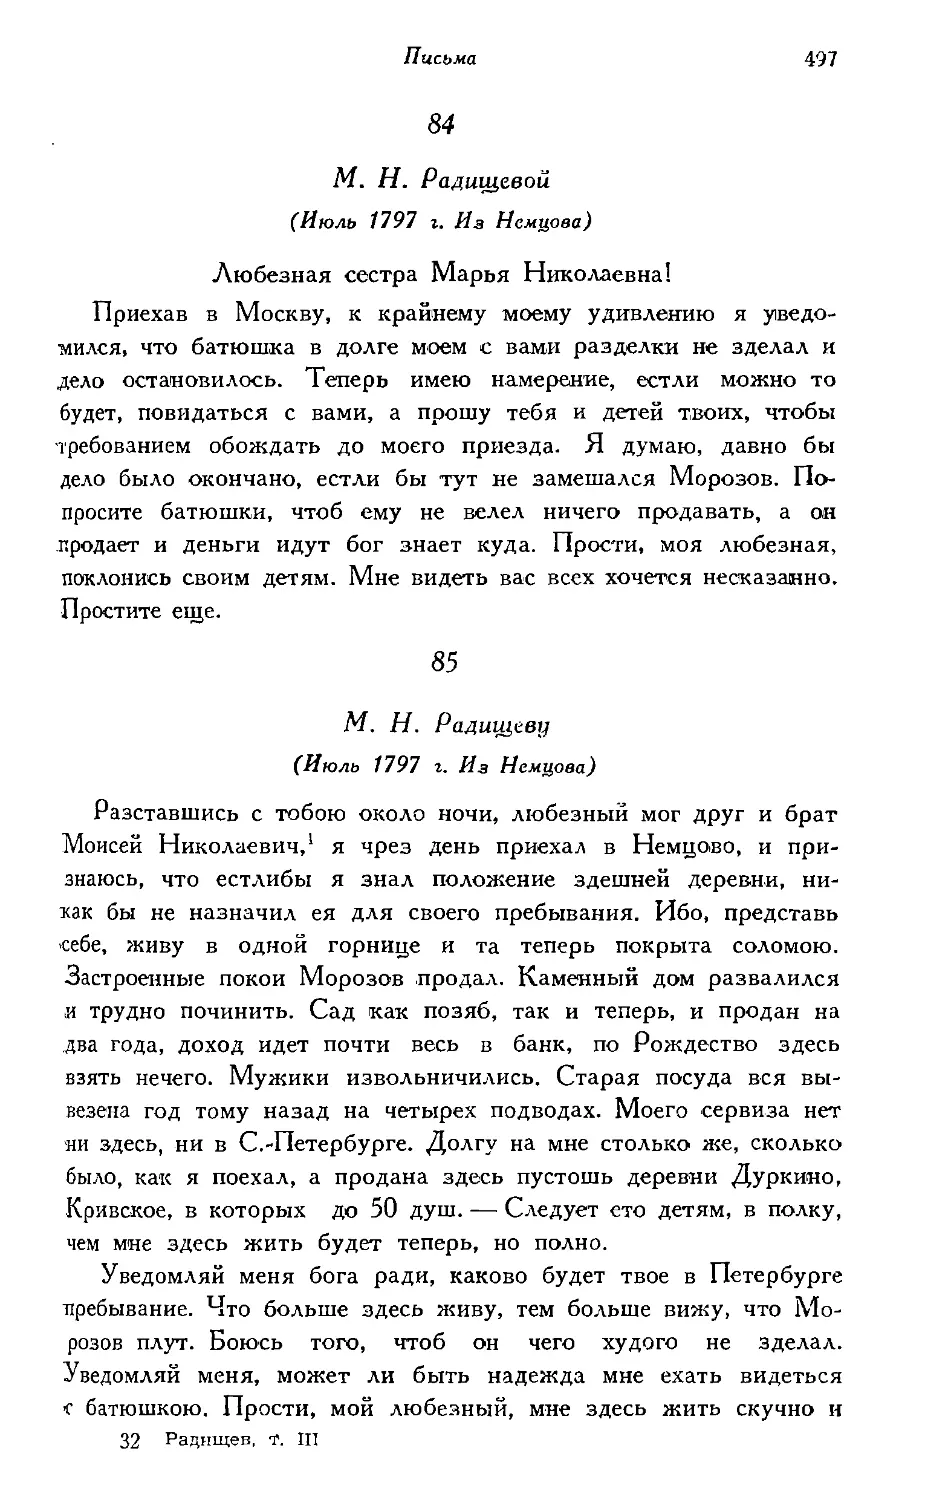 84. М. Н. Радищевой (июль 1797 г.); 85. М. Н. Радищеву (июль 1797 г.)